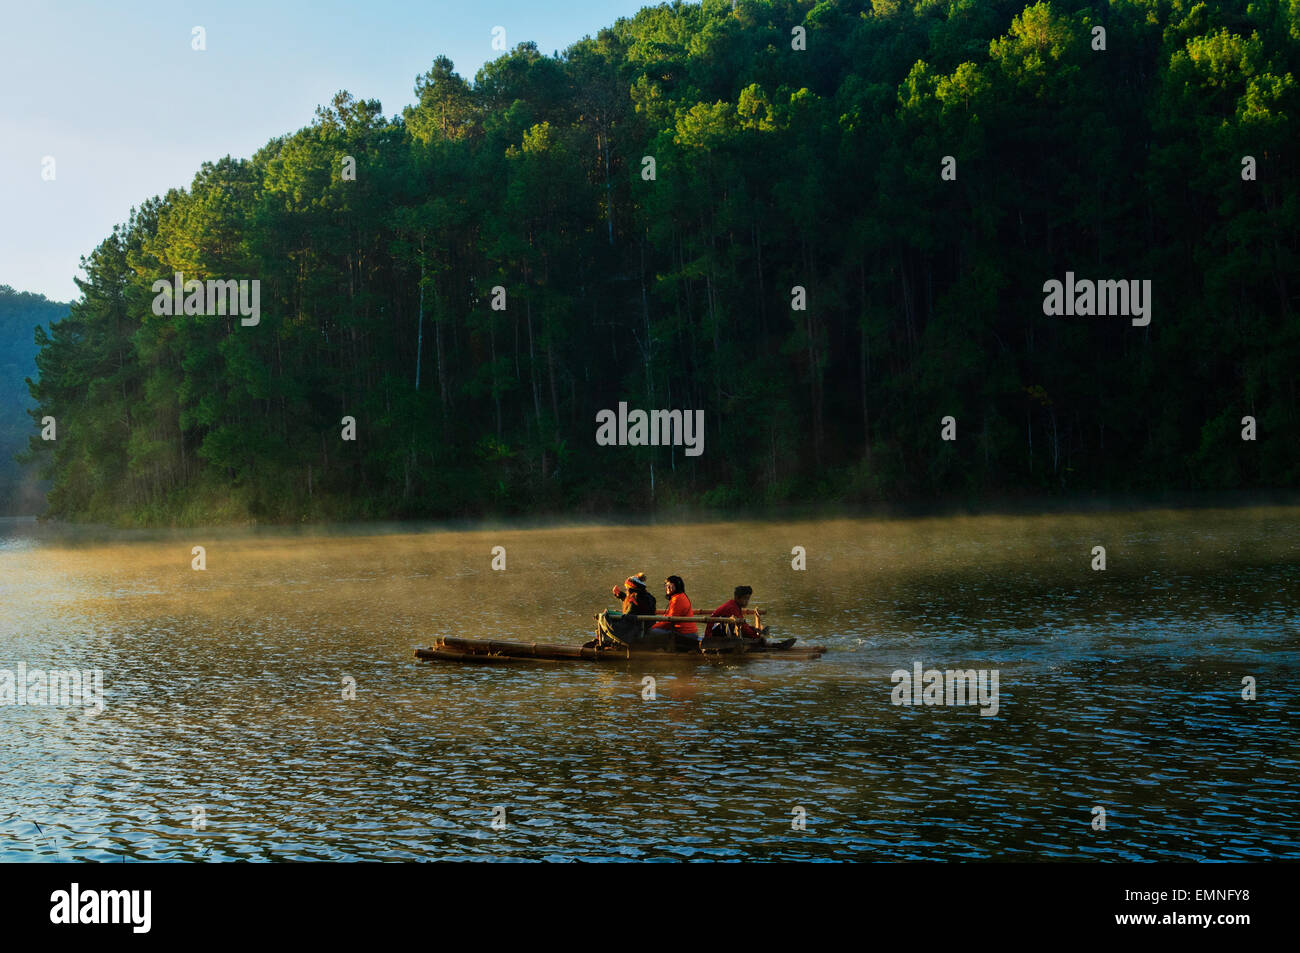 Water Rafting at Pang Oung Lake at the Burmese border, a reservouir project by Pang Tong Royal Project, Thailand Stock Photo